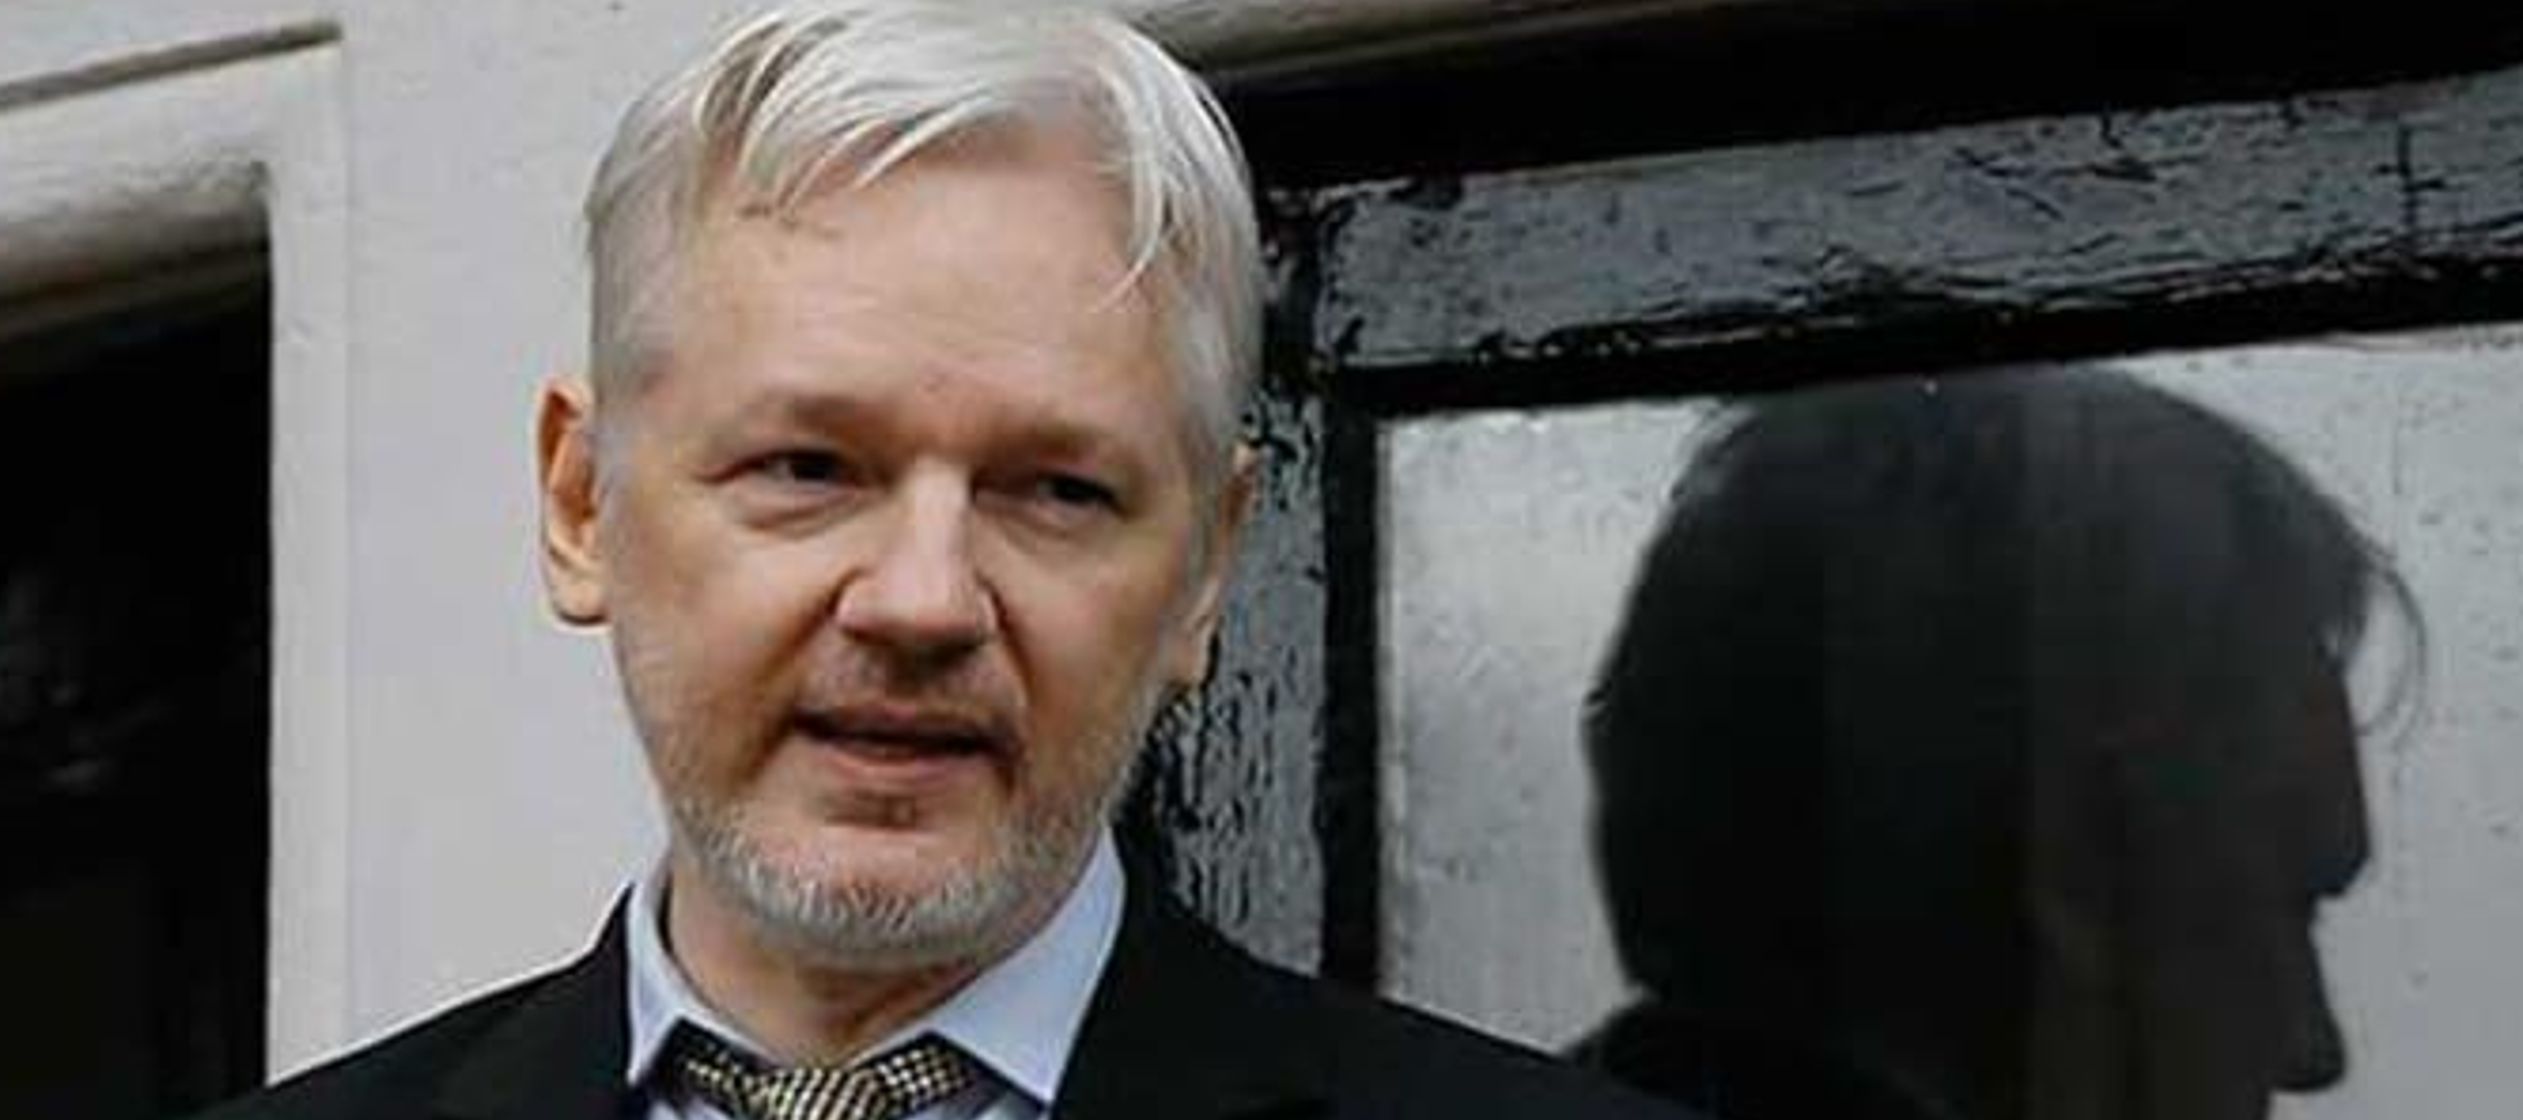 Desde entonces Assange ha denunciado que sus derechos se han visto afectados, pero las quejas no...